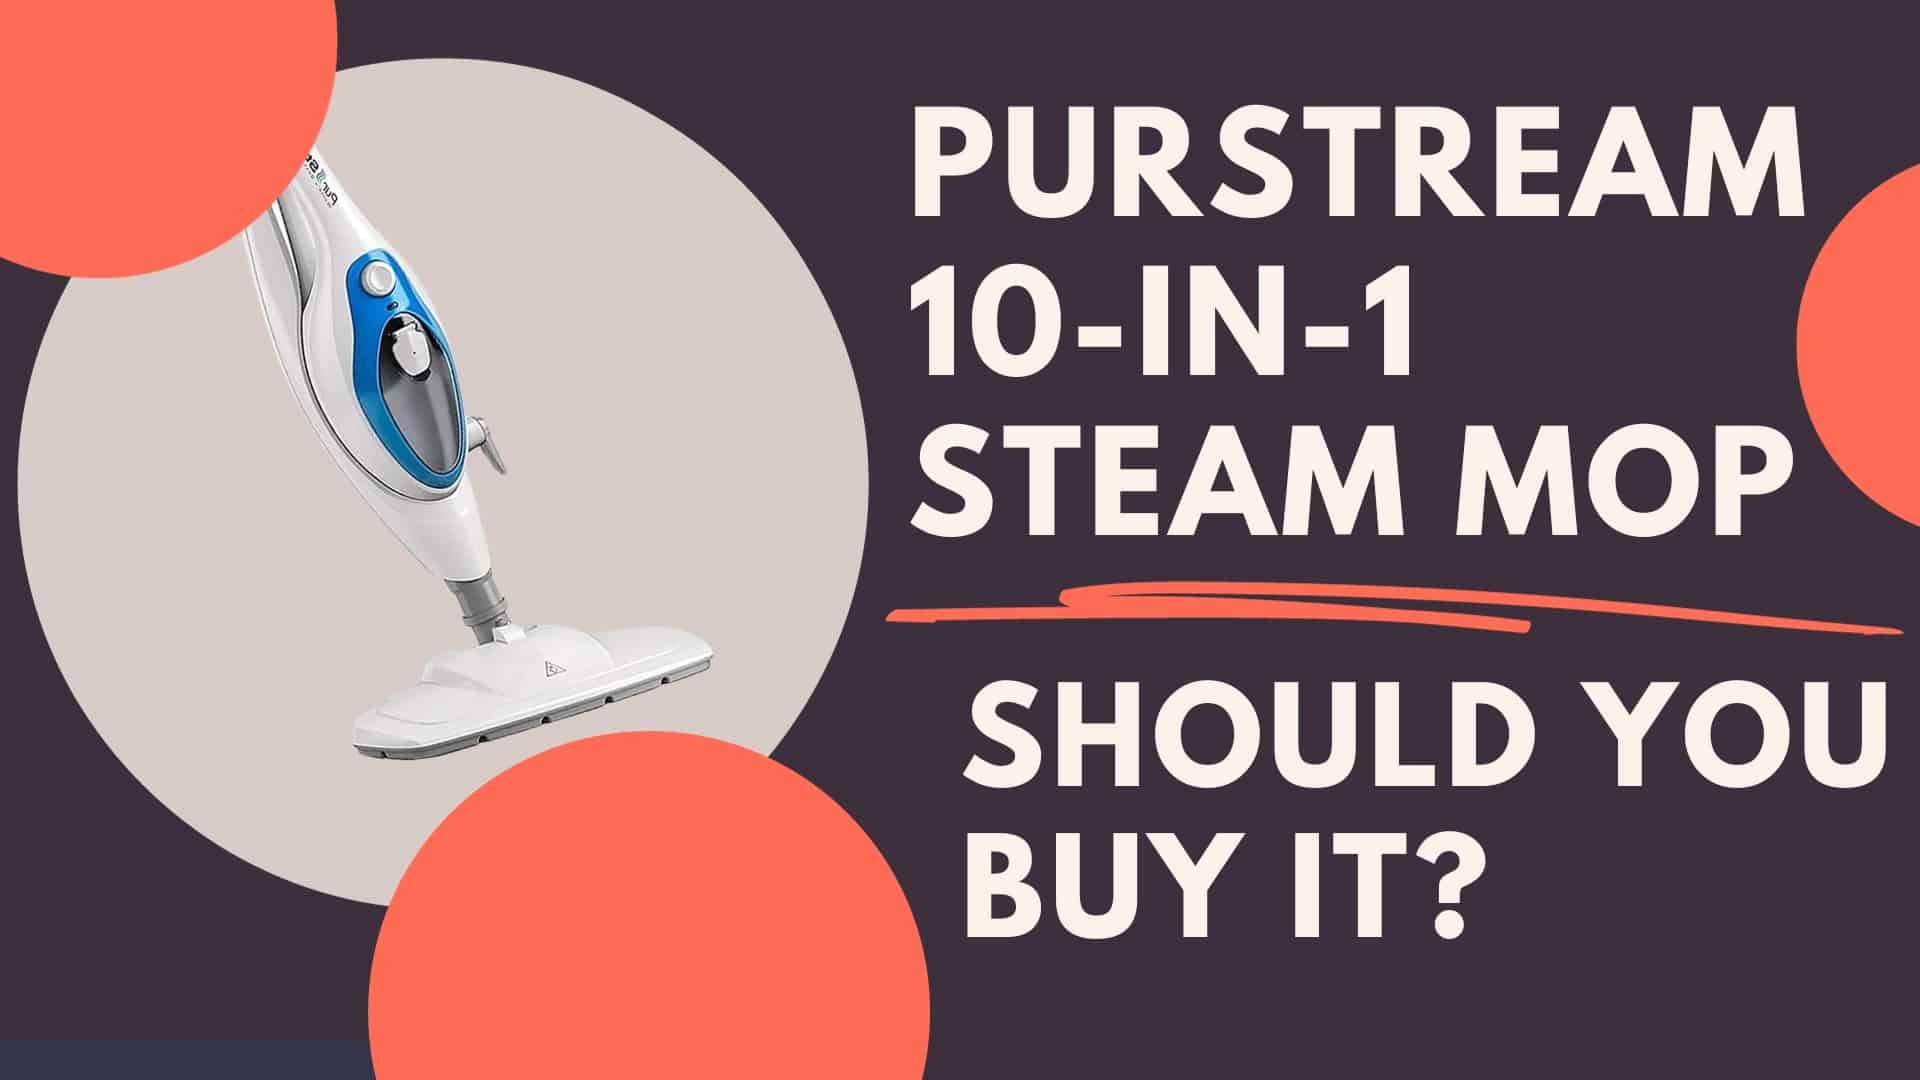 PurStream 10-in-1 Steam Mop